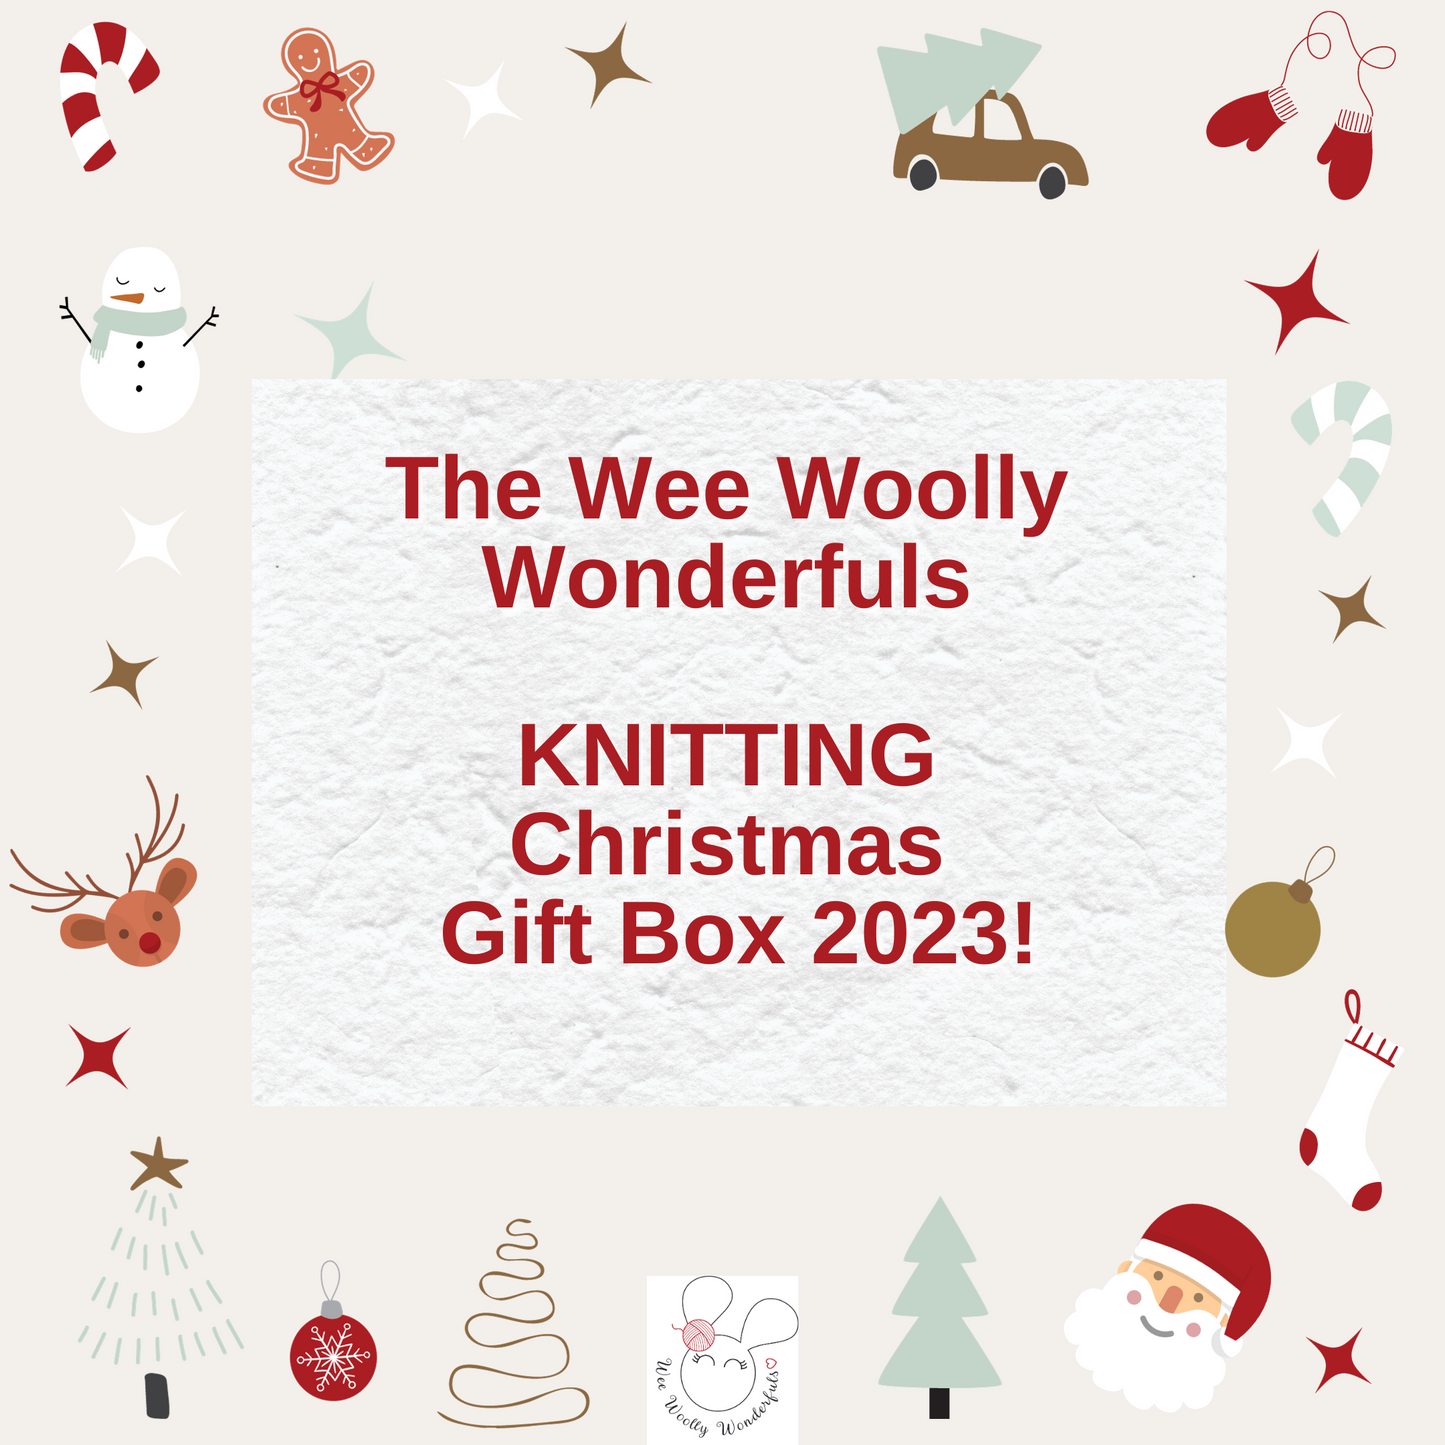 Knitting Christmas Gift Box 2023